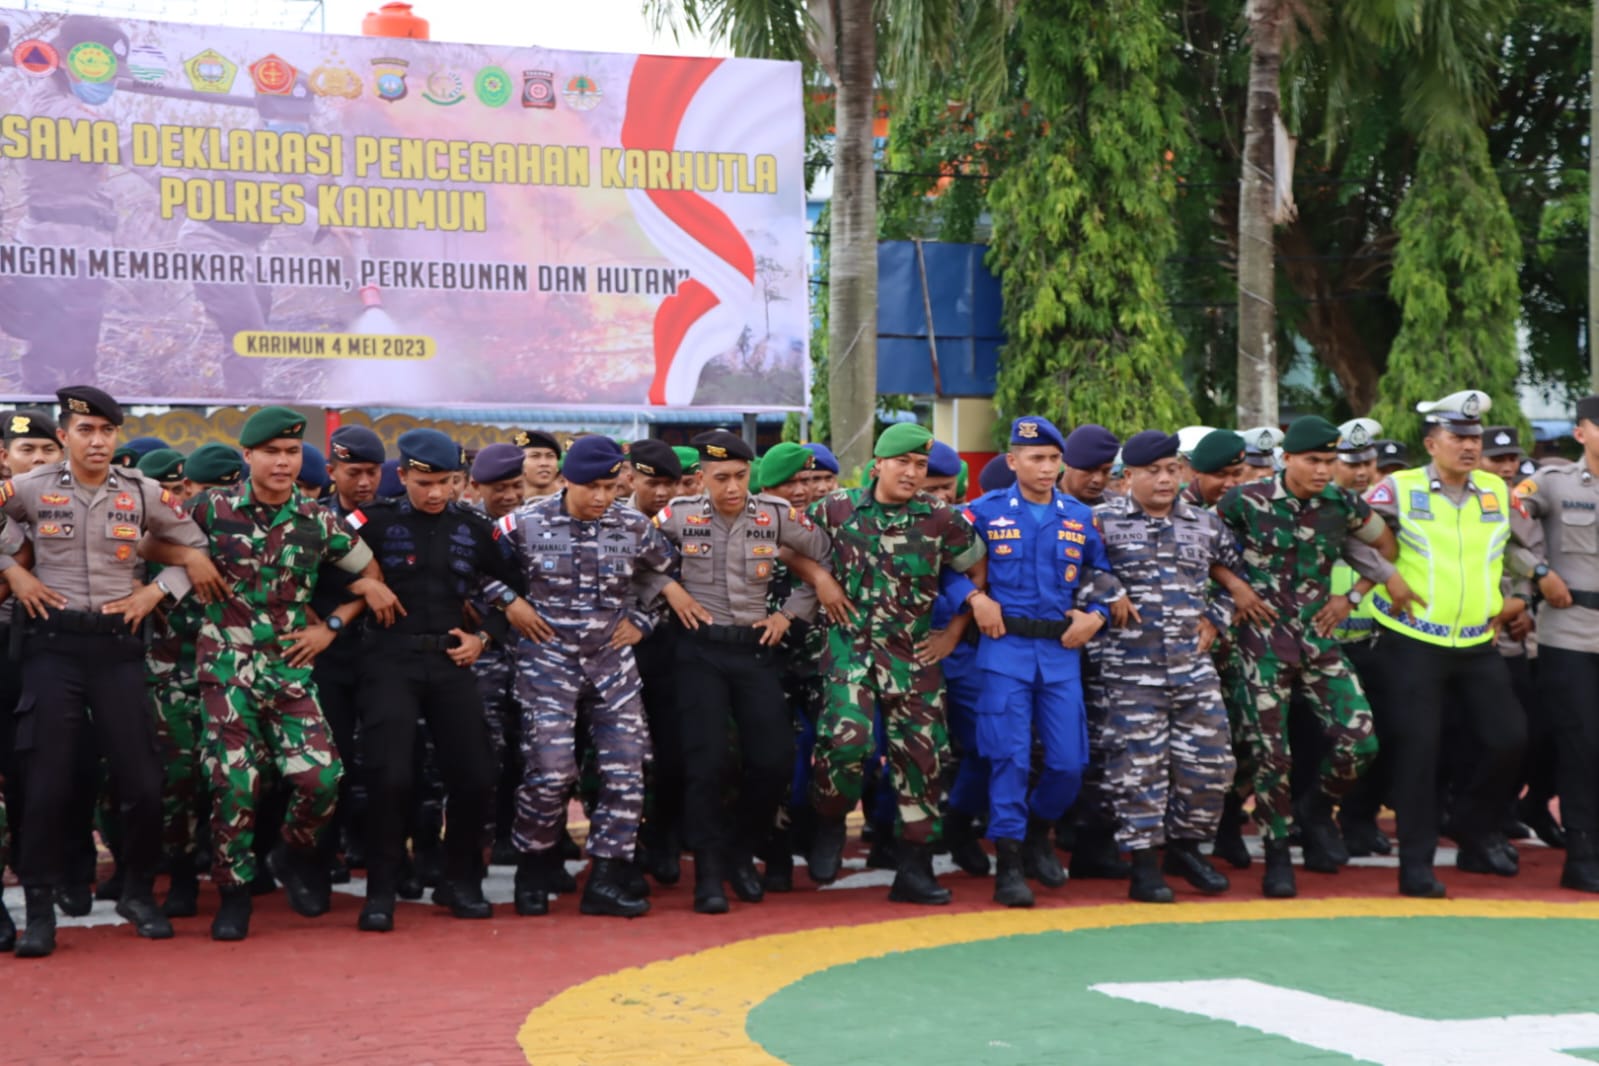 Polres Karimun Gelar Apel Jam Pimpinan TNI-Polri, Ciptakan Sinergitas dan Soliditas